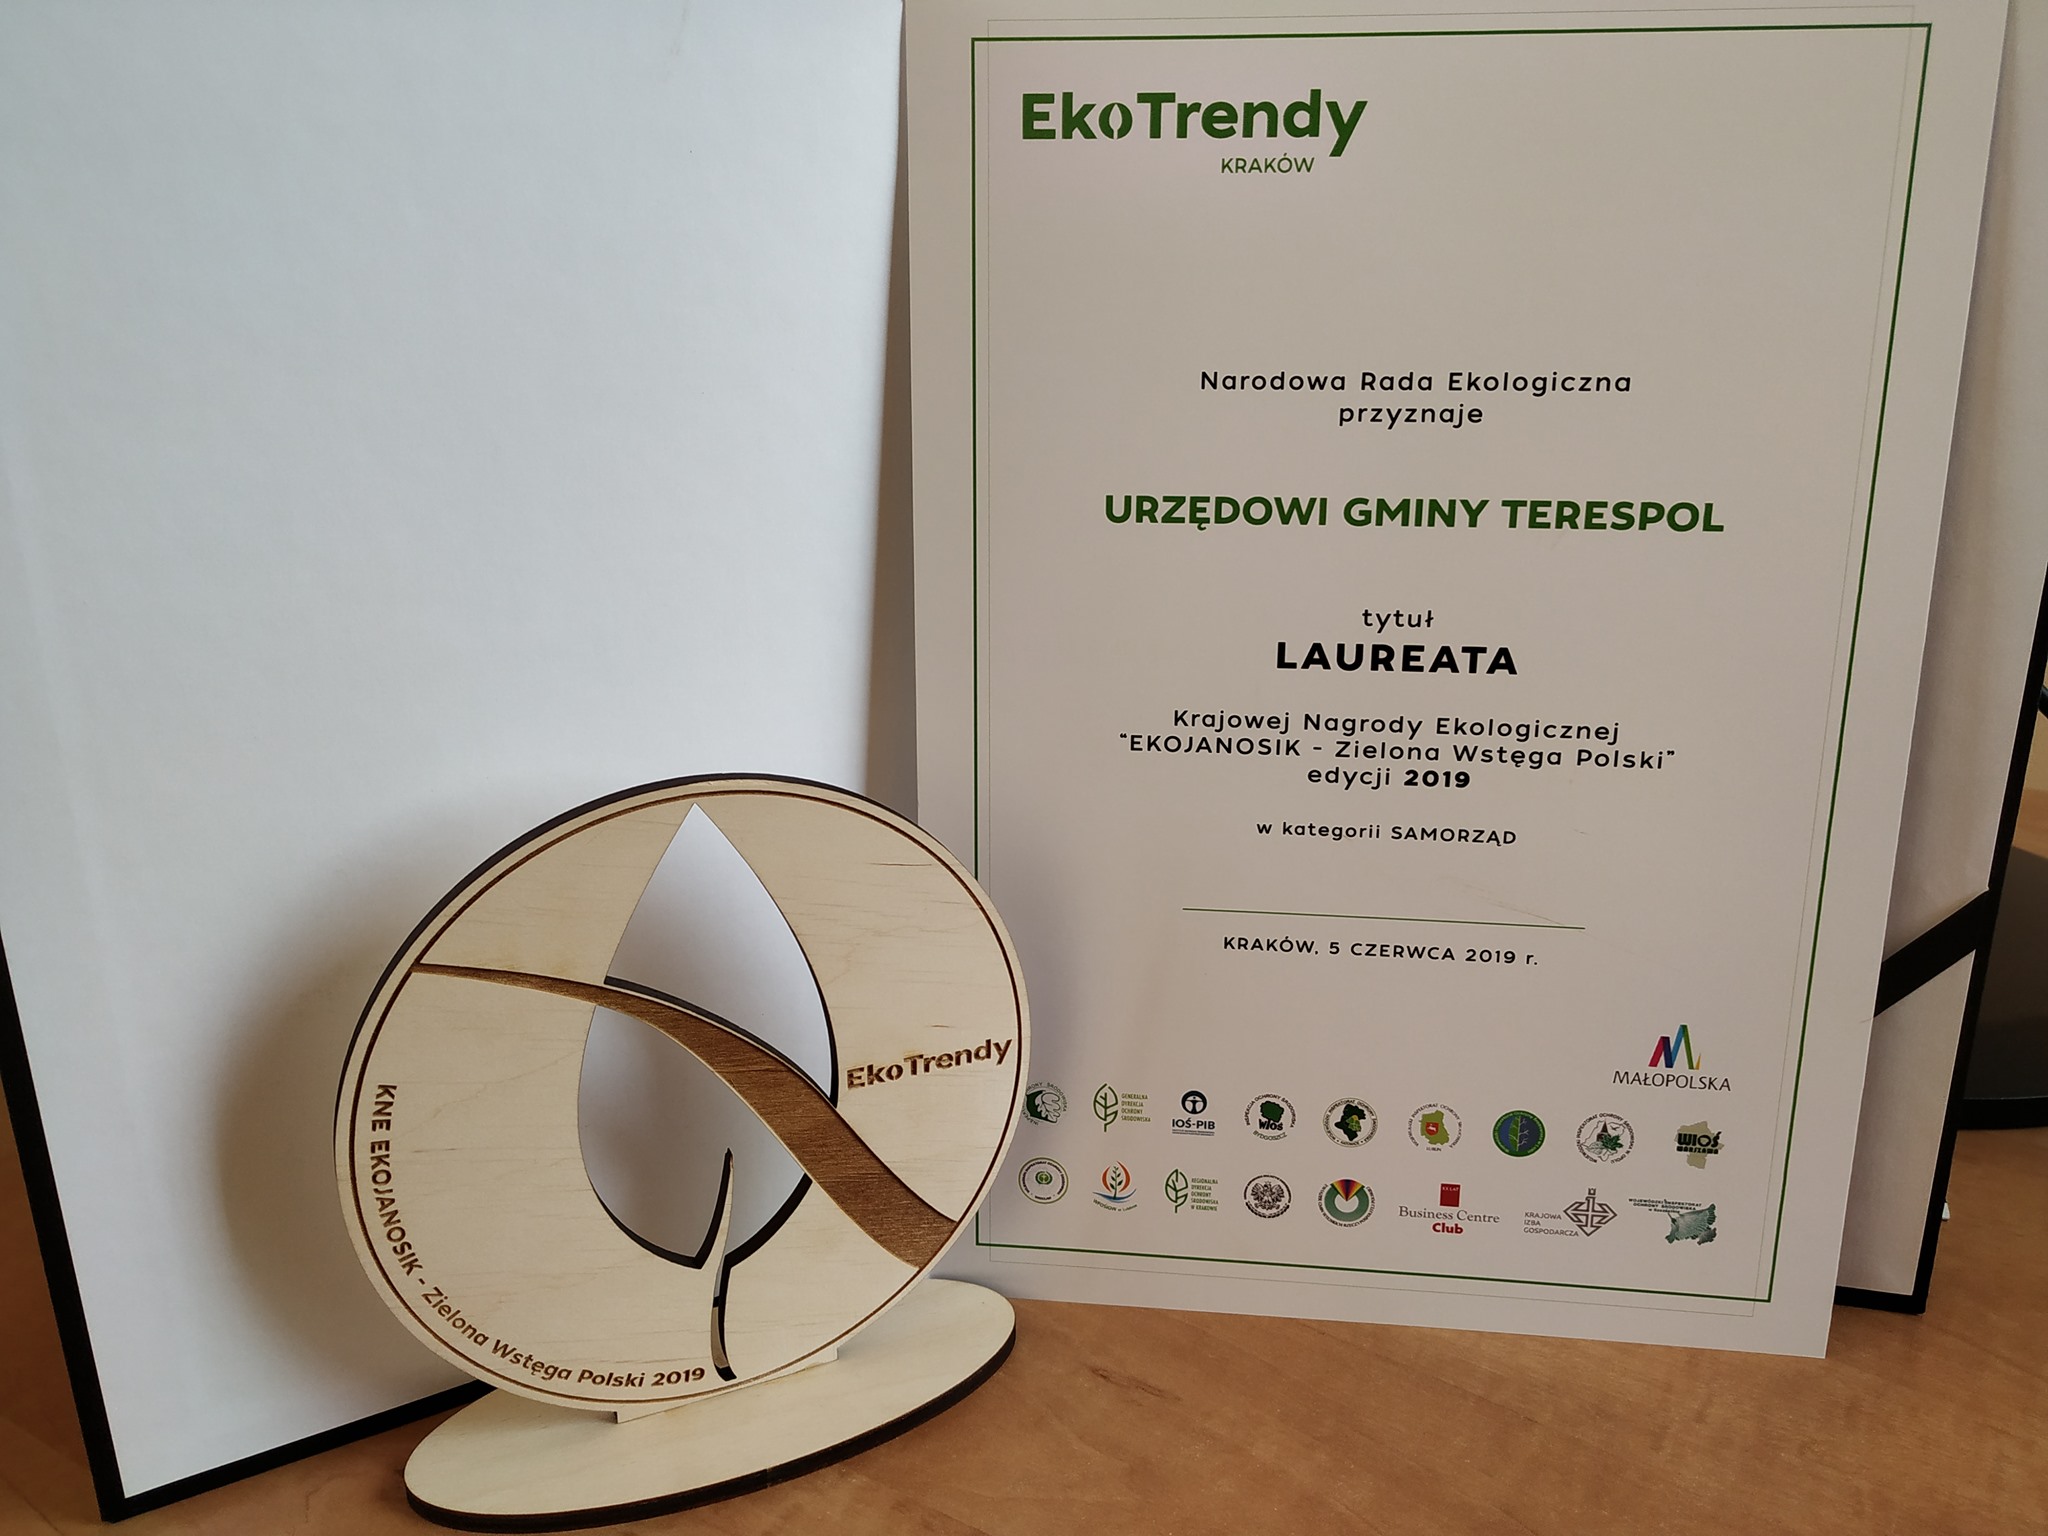 Urząd Gminy Terespol laureatem Krajowej Nagrody Ekologicznej - EKOJANOSIK - Zielona Wstęga Polski edycji 2019